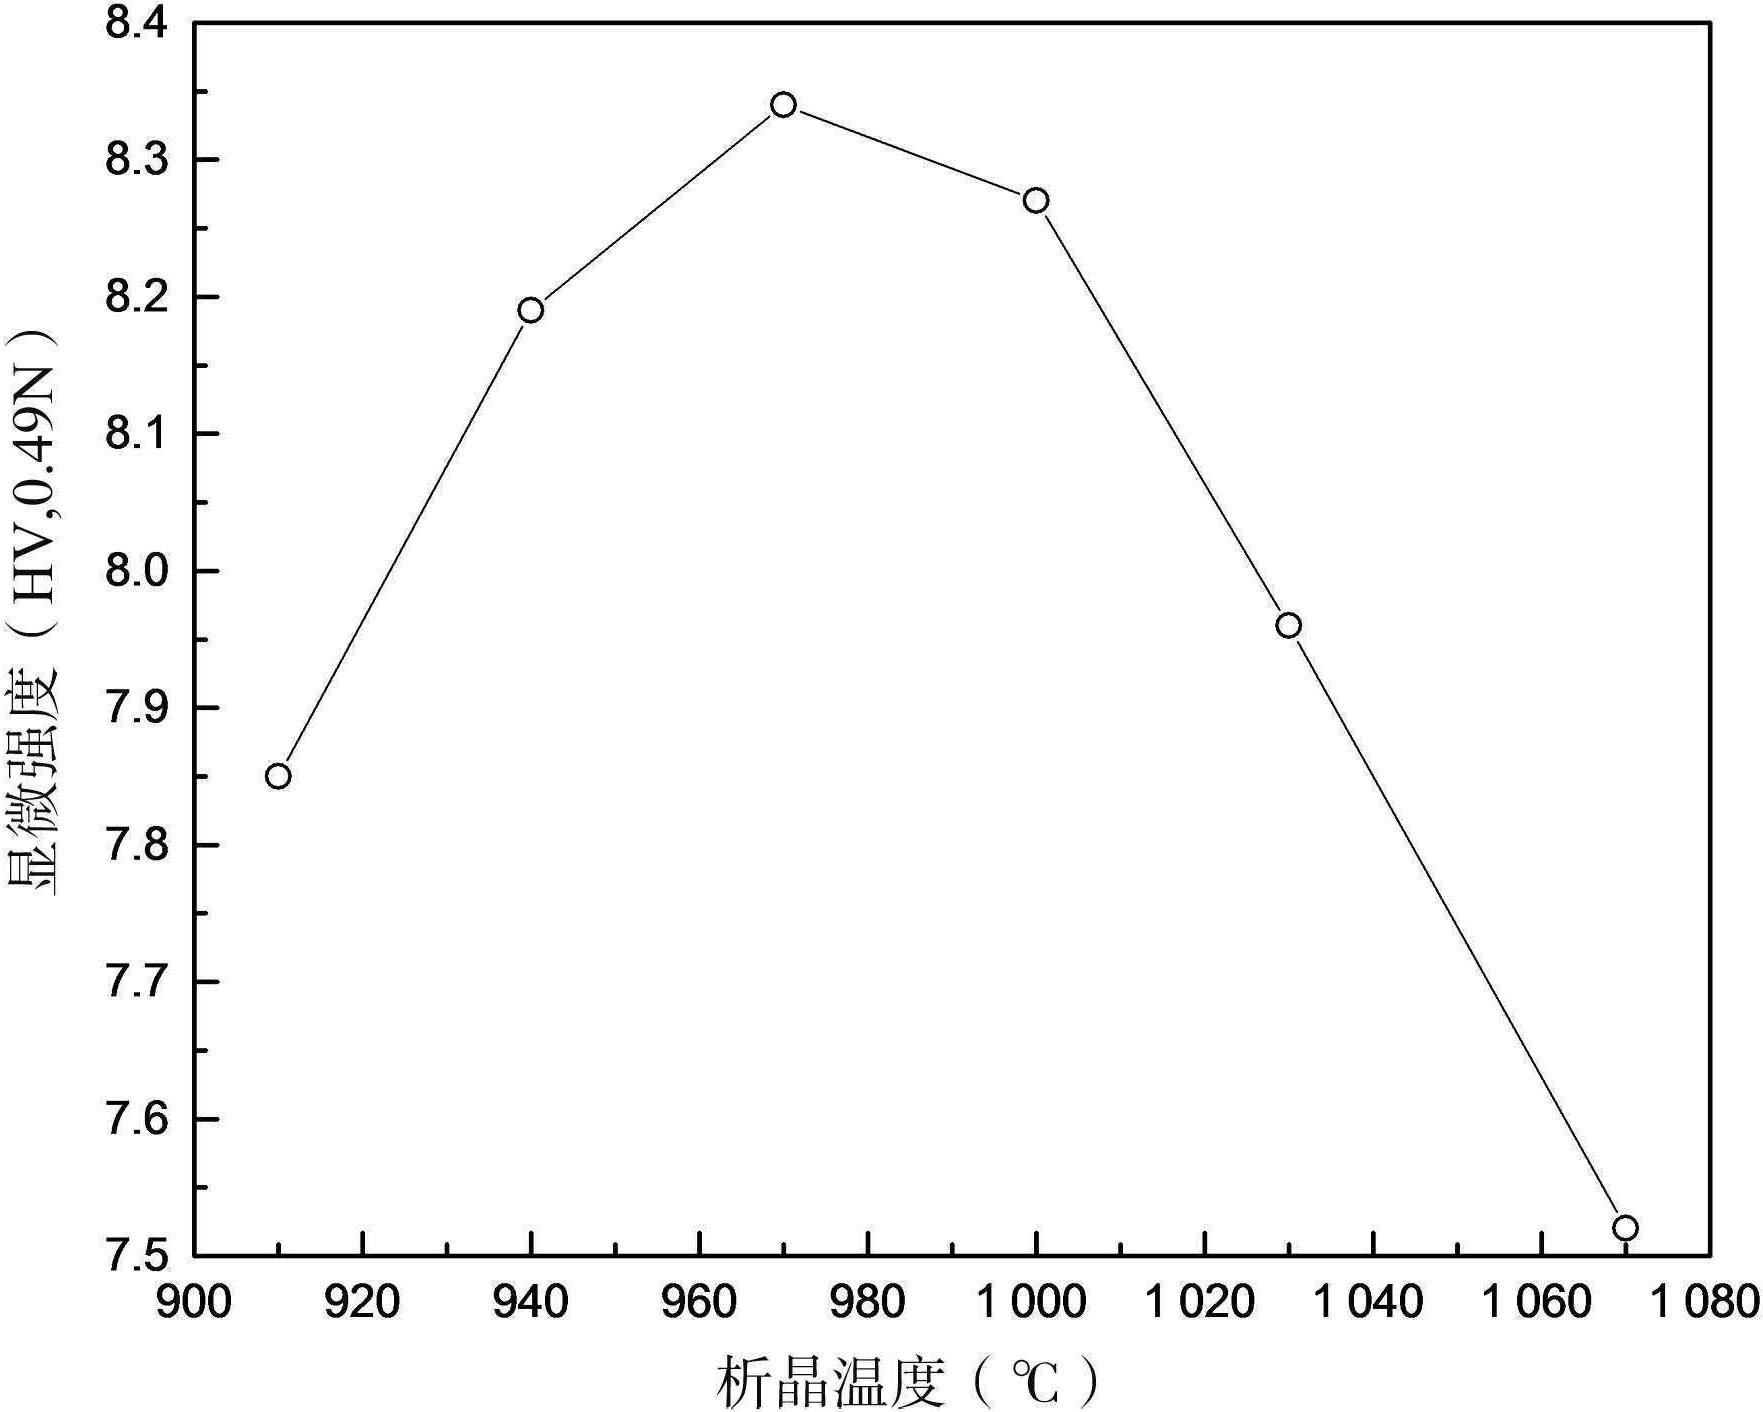 4.5.1 析晶温度对矿渣微晶玻璃性能的影响